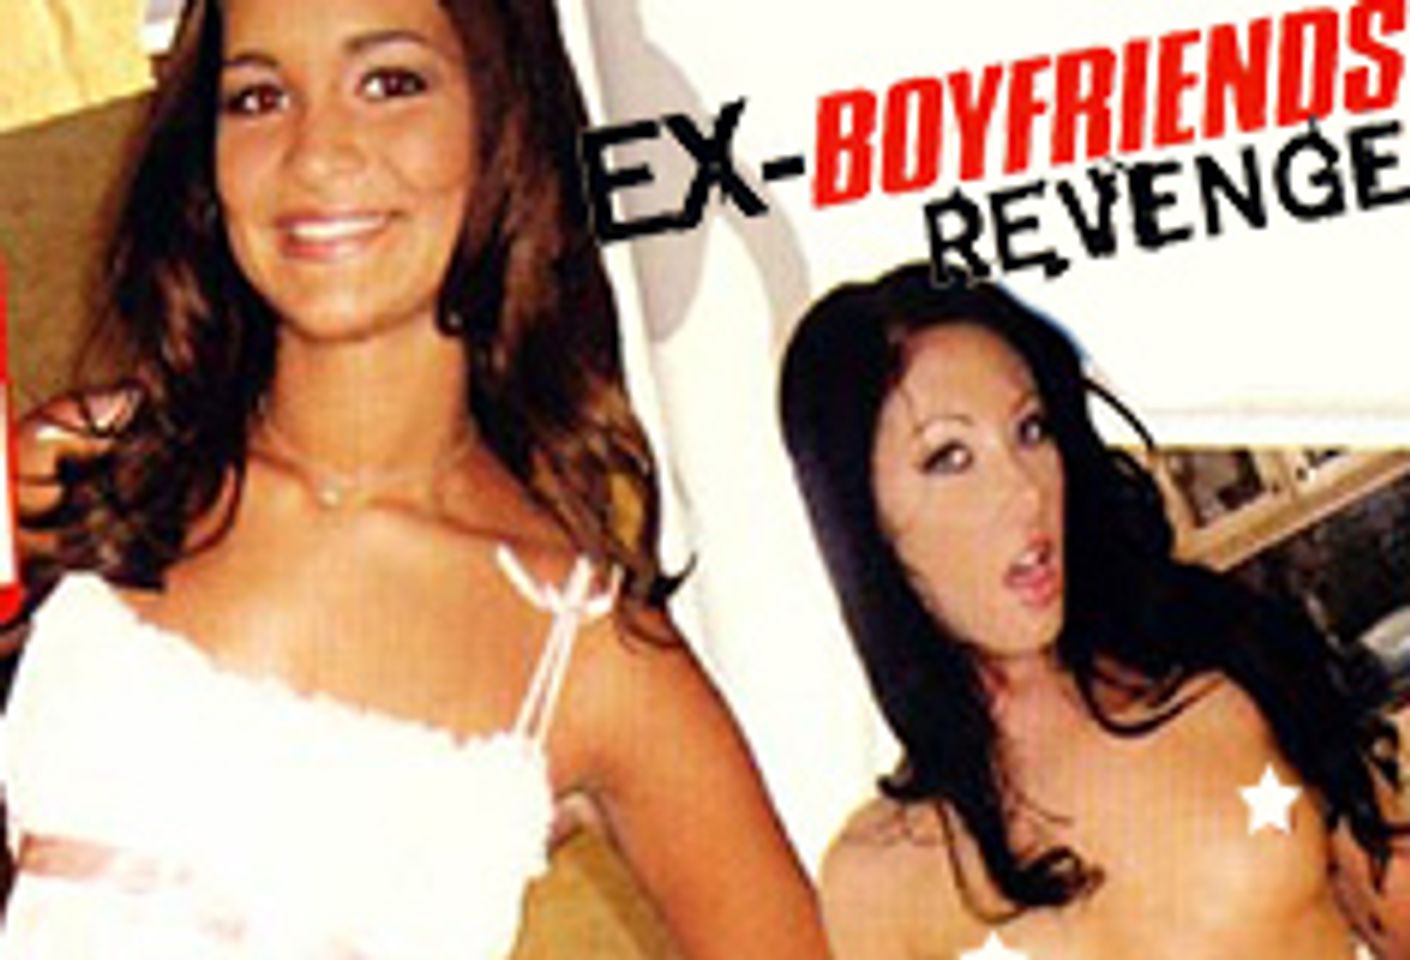 FuckYouCash Releases <i>Ex-Boyfriend's Revenge</i>